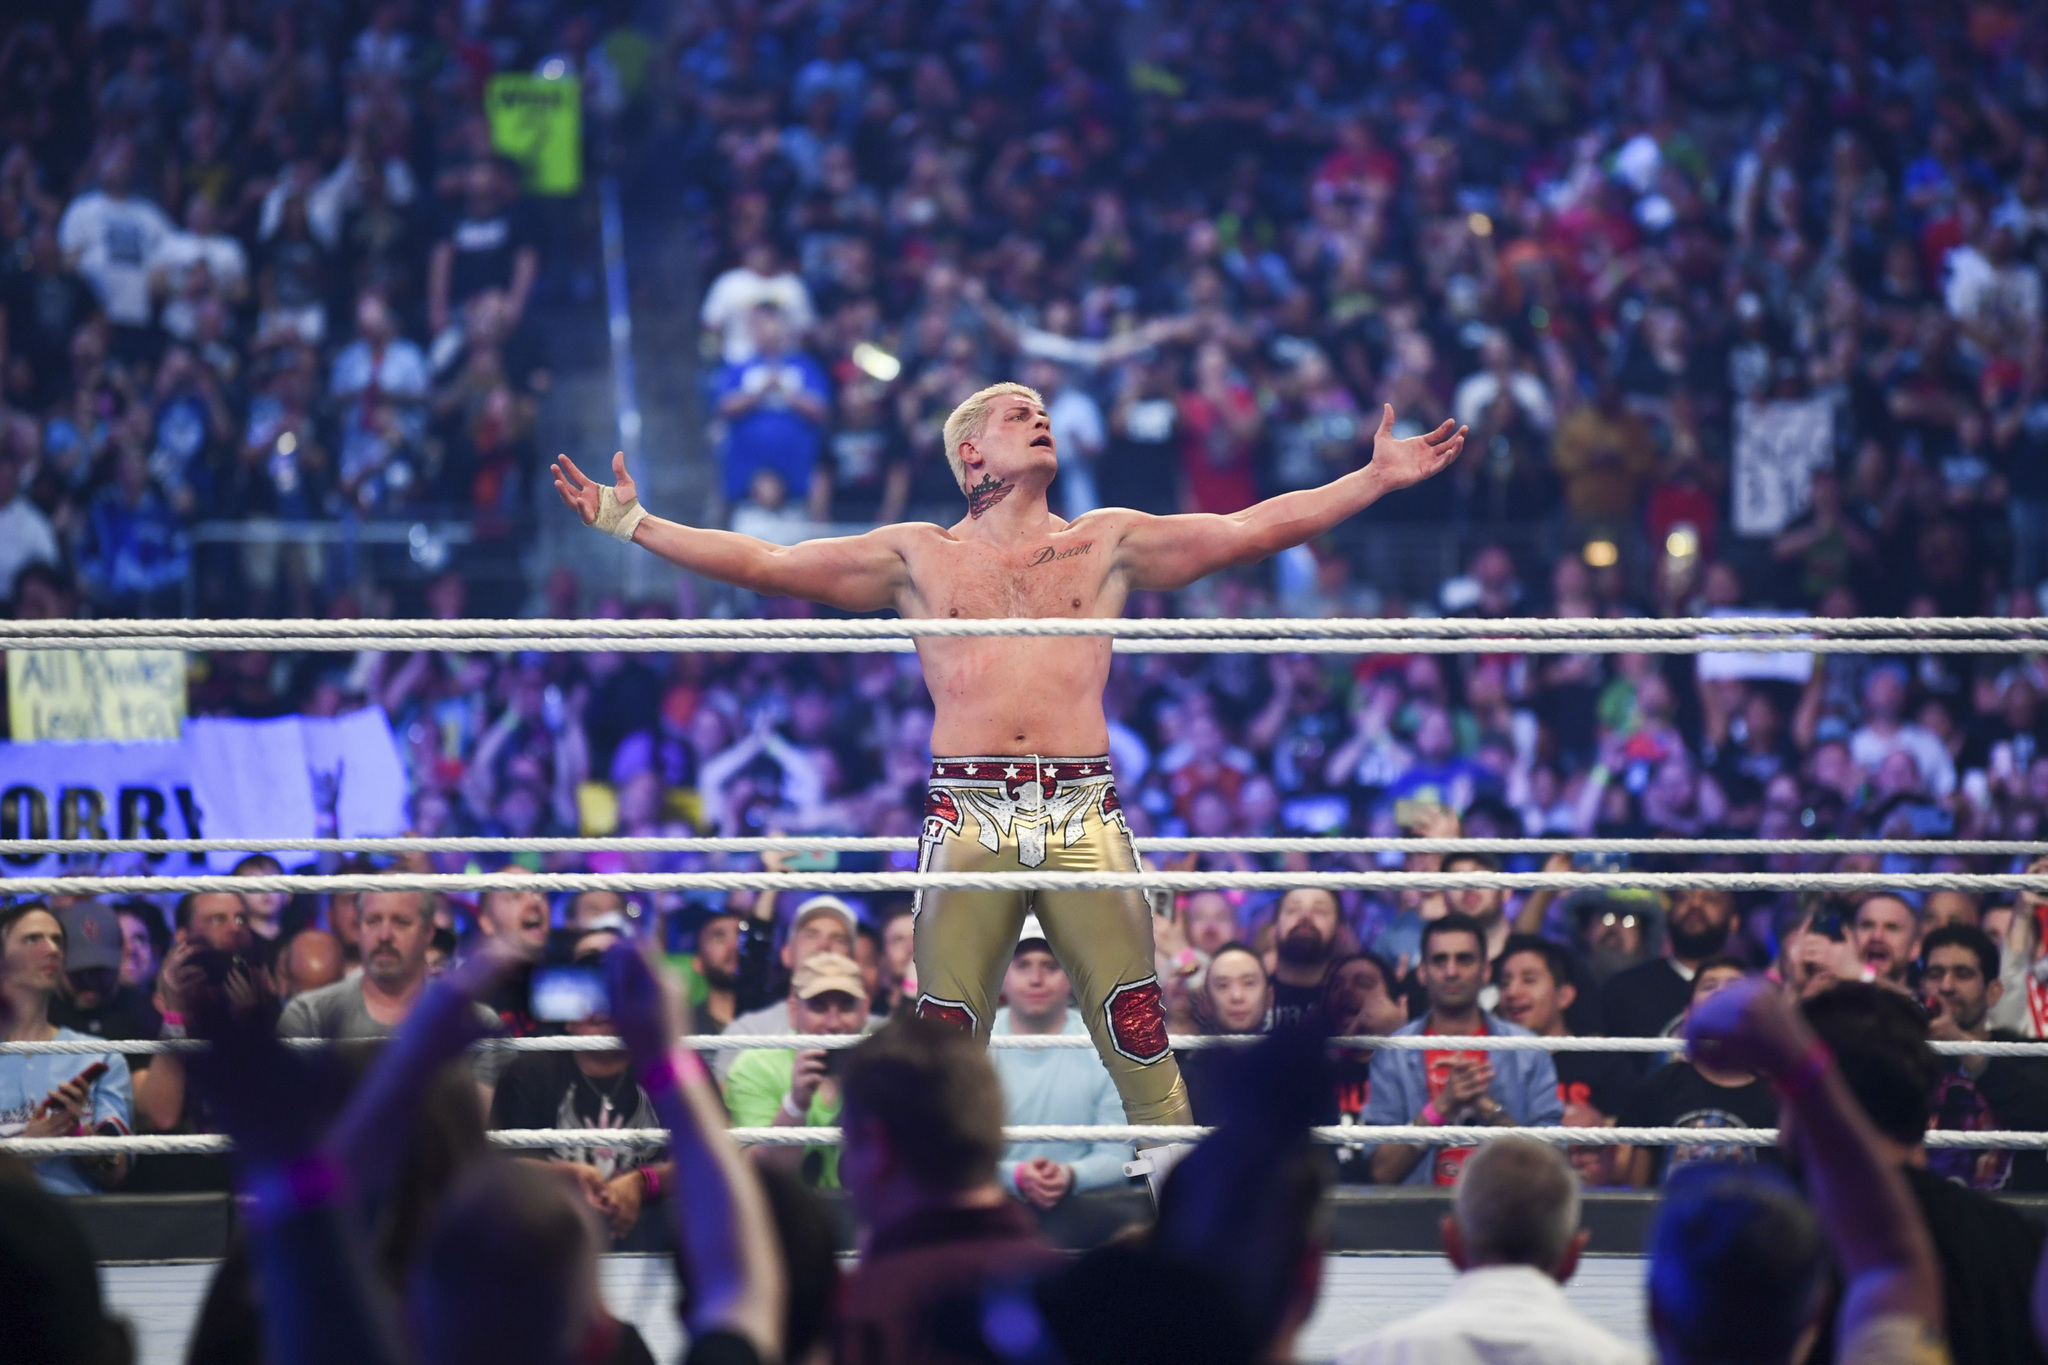 Cody Rhodes à WrestleMania 38 est exactement ce dont la WWE et la lutte ont besoin |  Actualités, résultats, faits saillants, statistiques et rumeurs |  Rapport de blanchiment